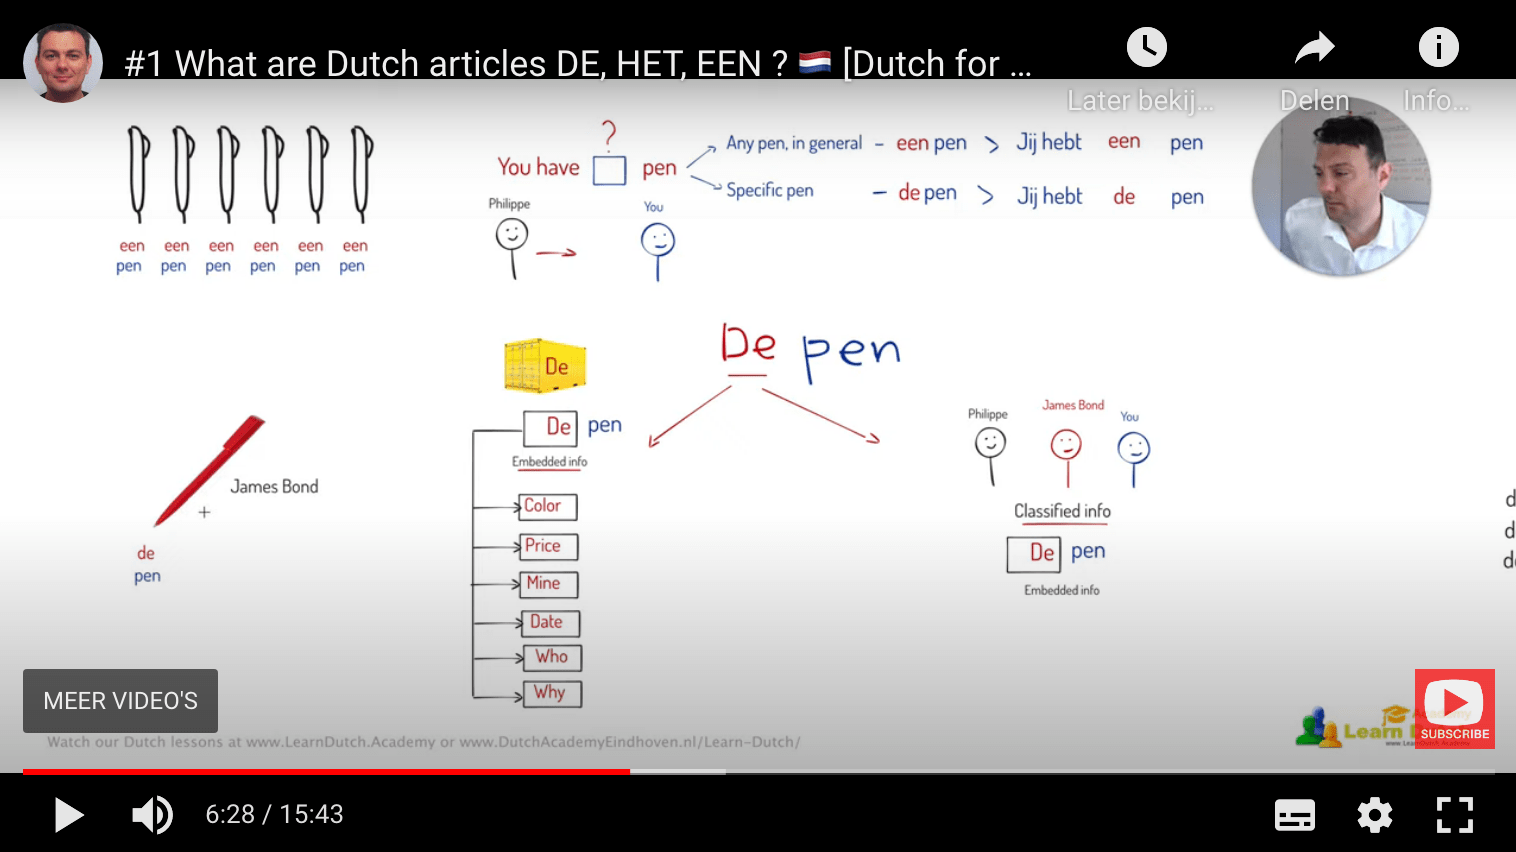 What are Dutch articles DE, HET, EEN?